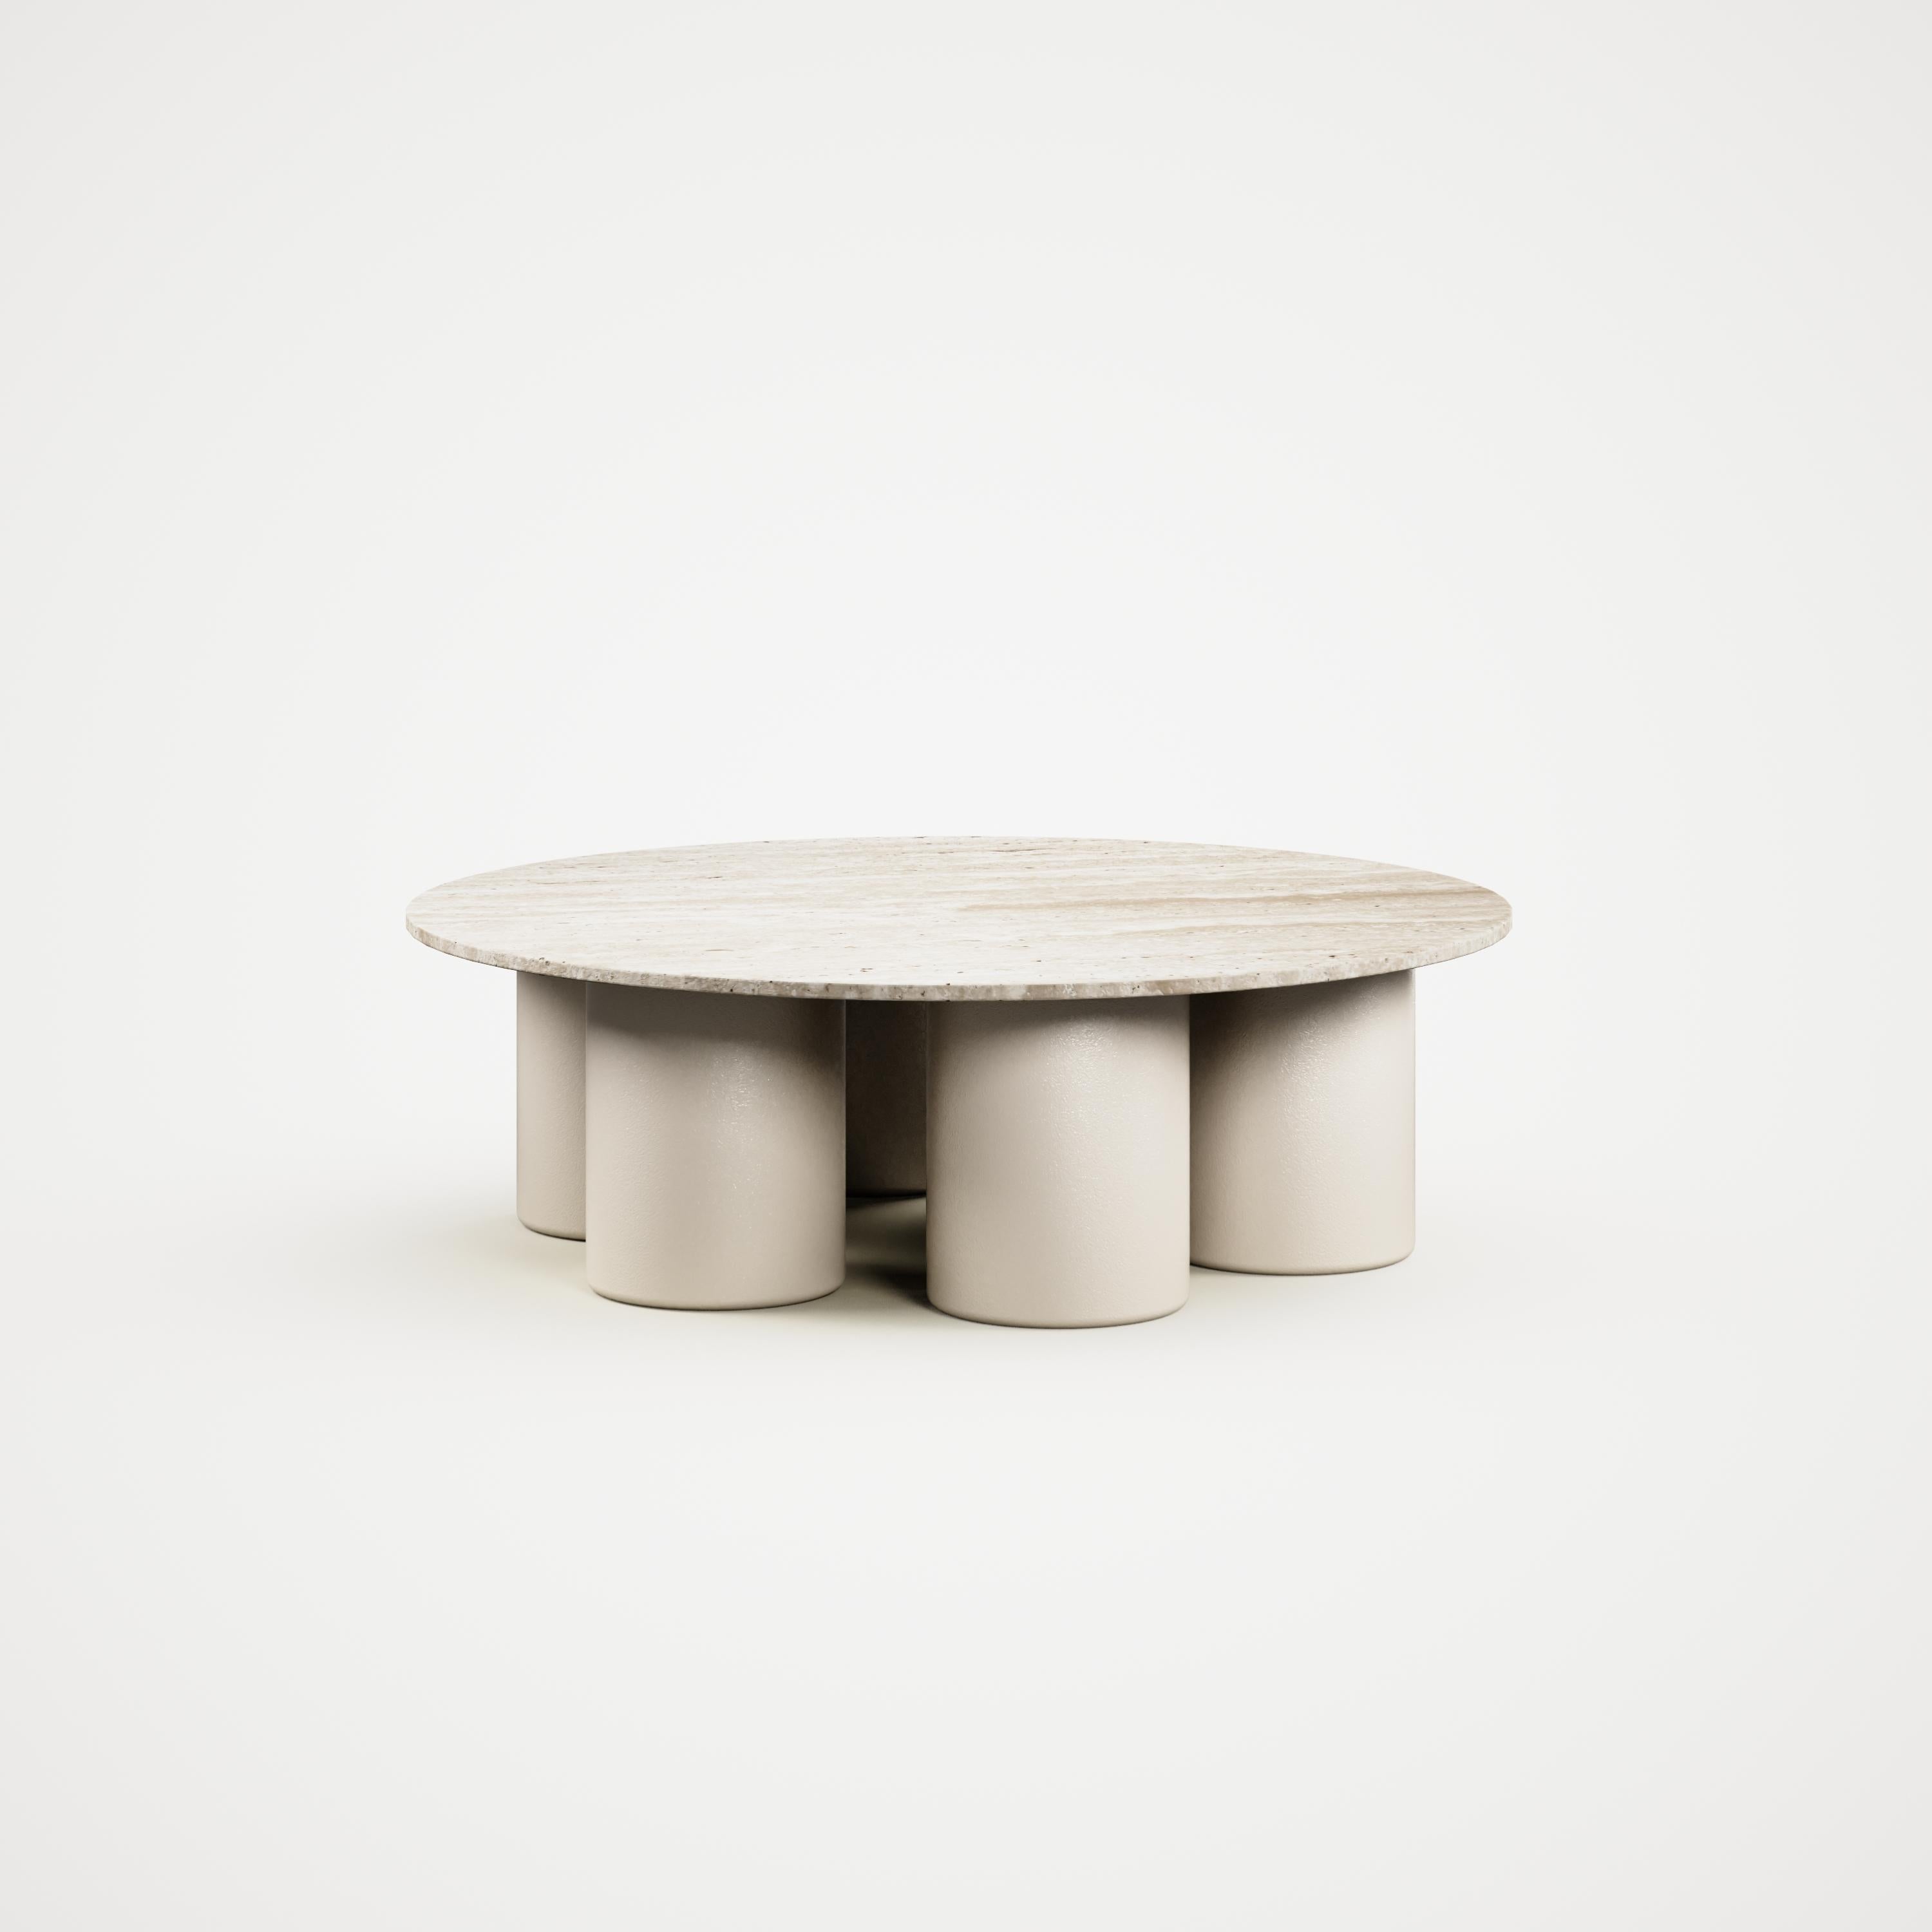 Table basse ronde haut de gamme en acier inoxydable avec plateau en travertin, conçue par Vincent Mazenauer. La table peut être laquée dans toutes les couleurs (blanc, noir, gris, or, jaune, rouge, jaune, bleu, etc.) 
Cette table provient de la